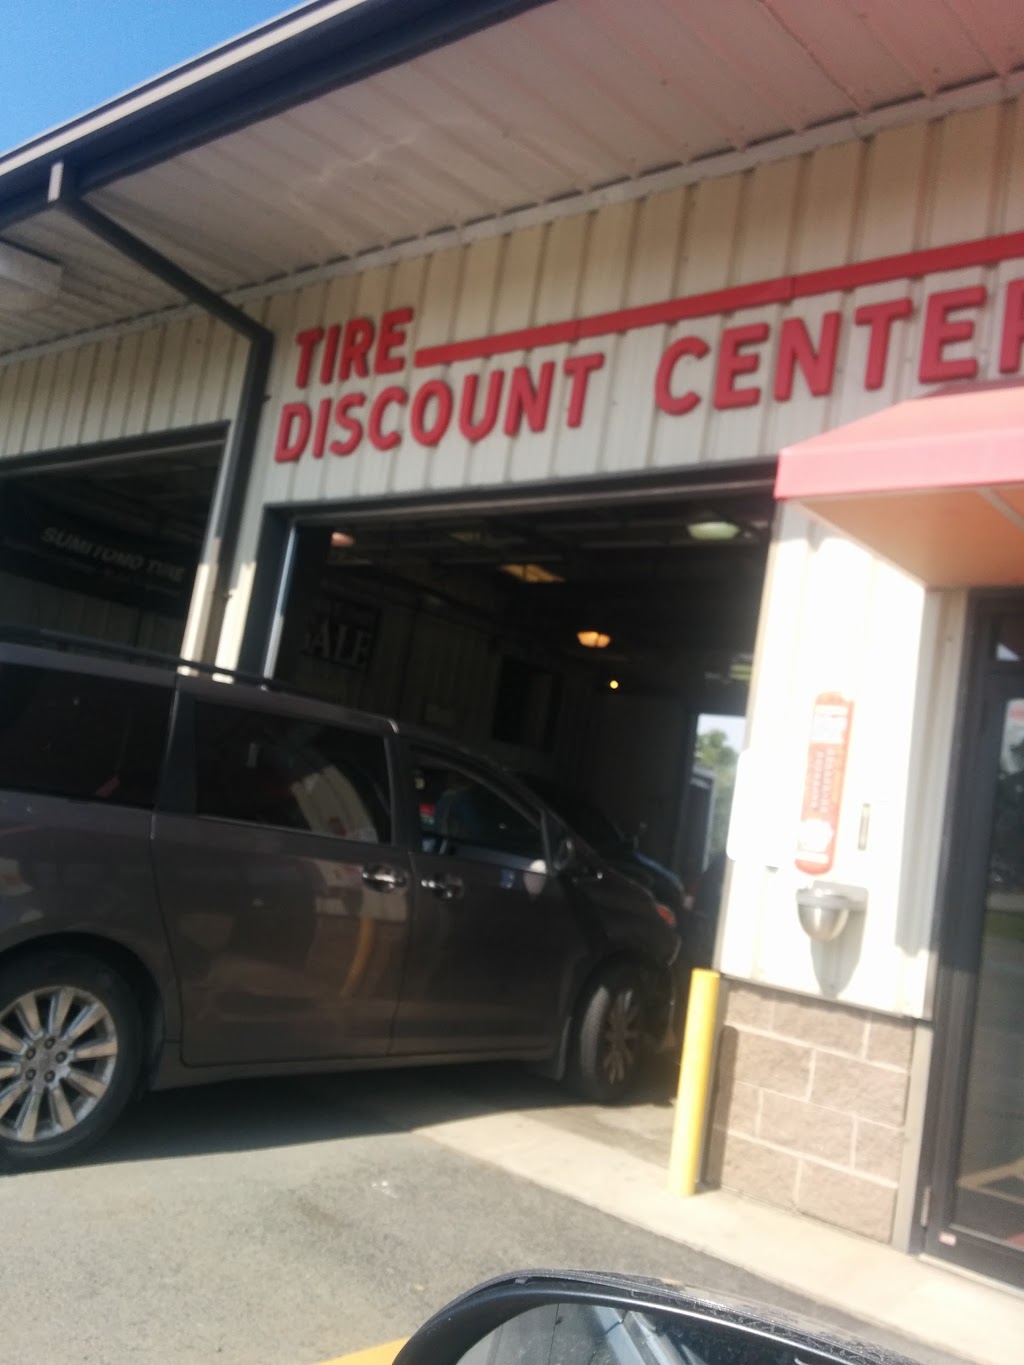 Tire Discount Center | 176 E Broadway, Monticello, NY 12701 | Phone: (845) 794-4455